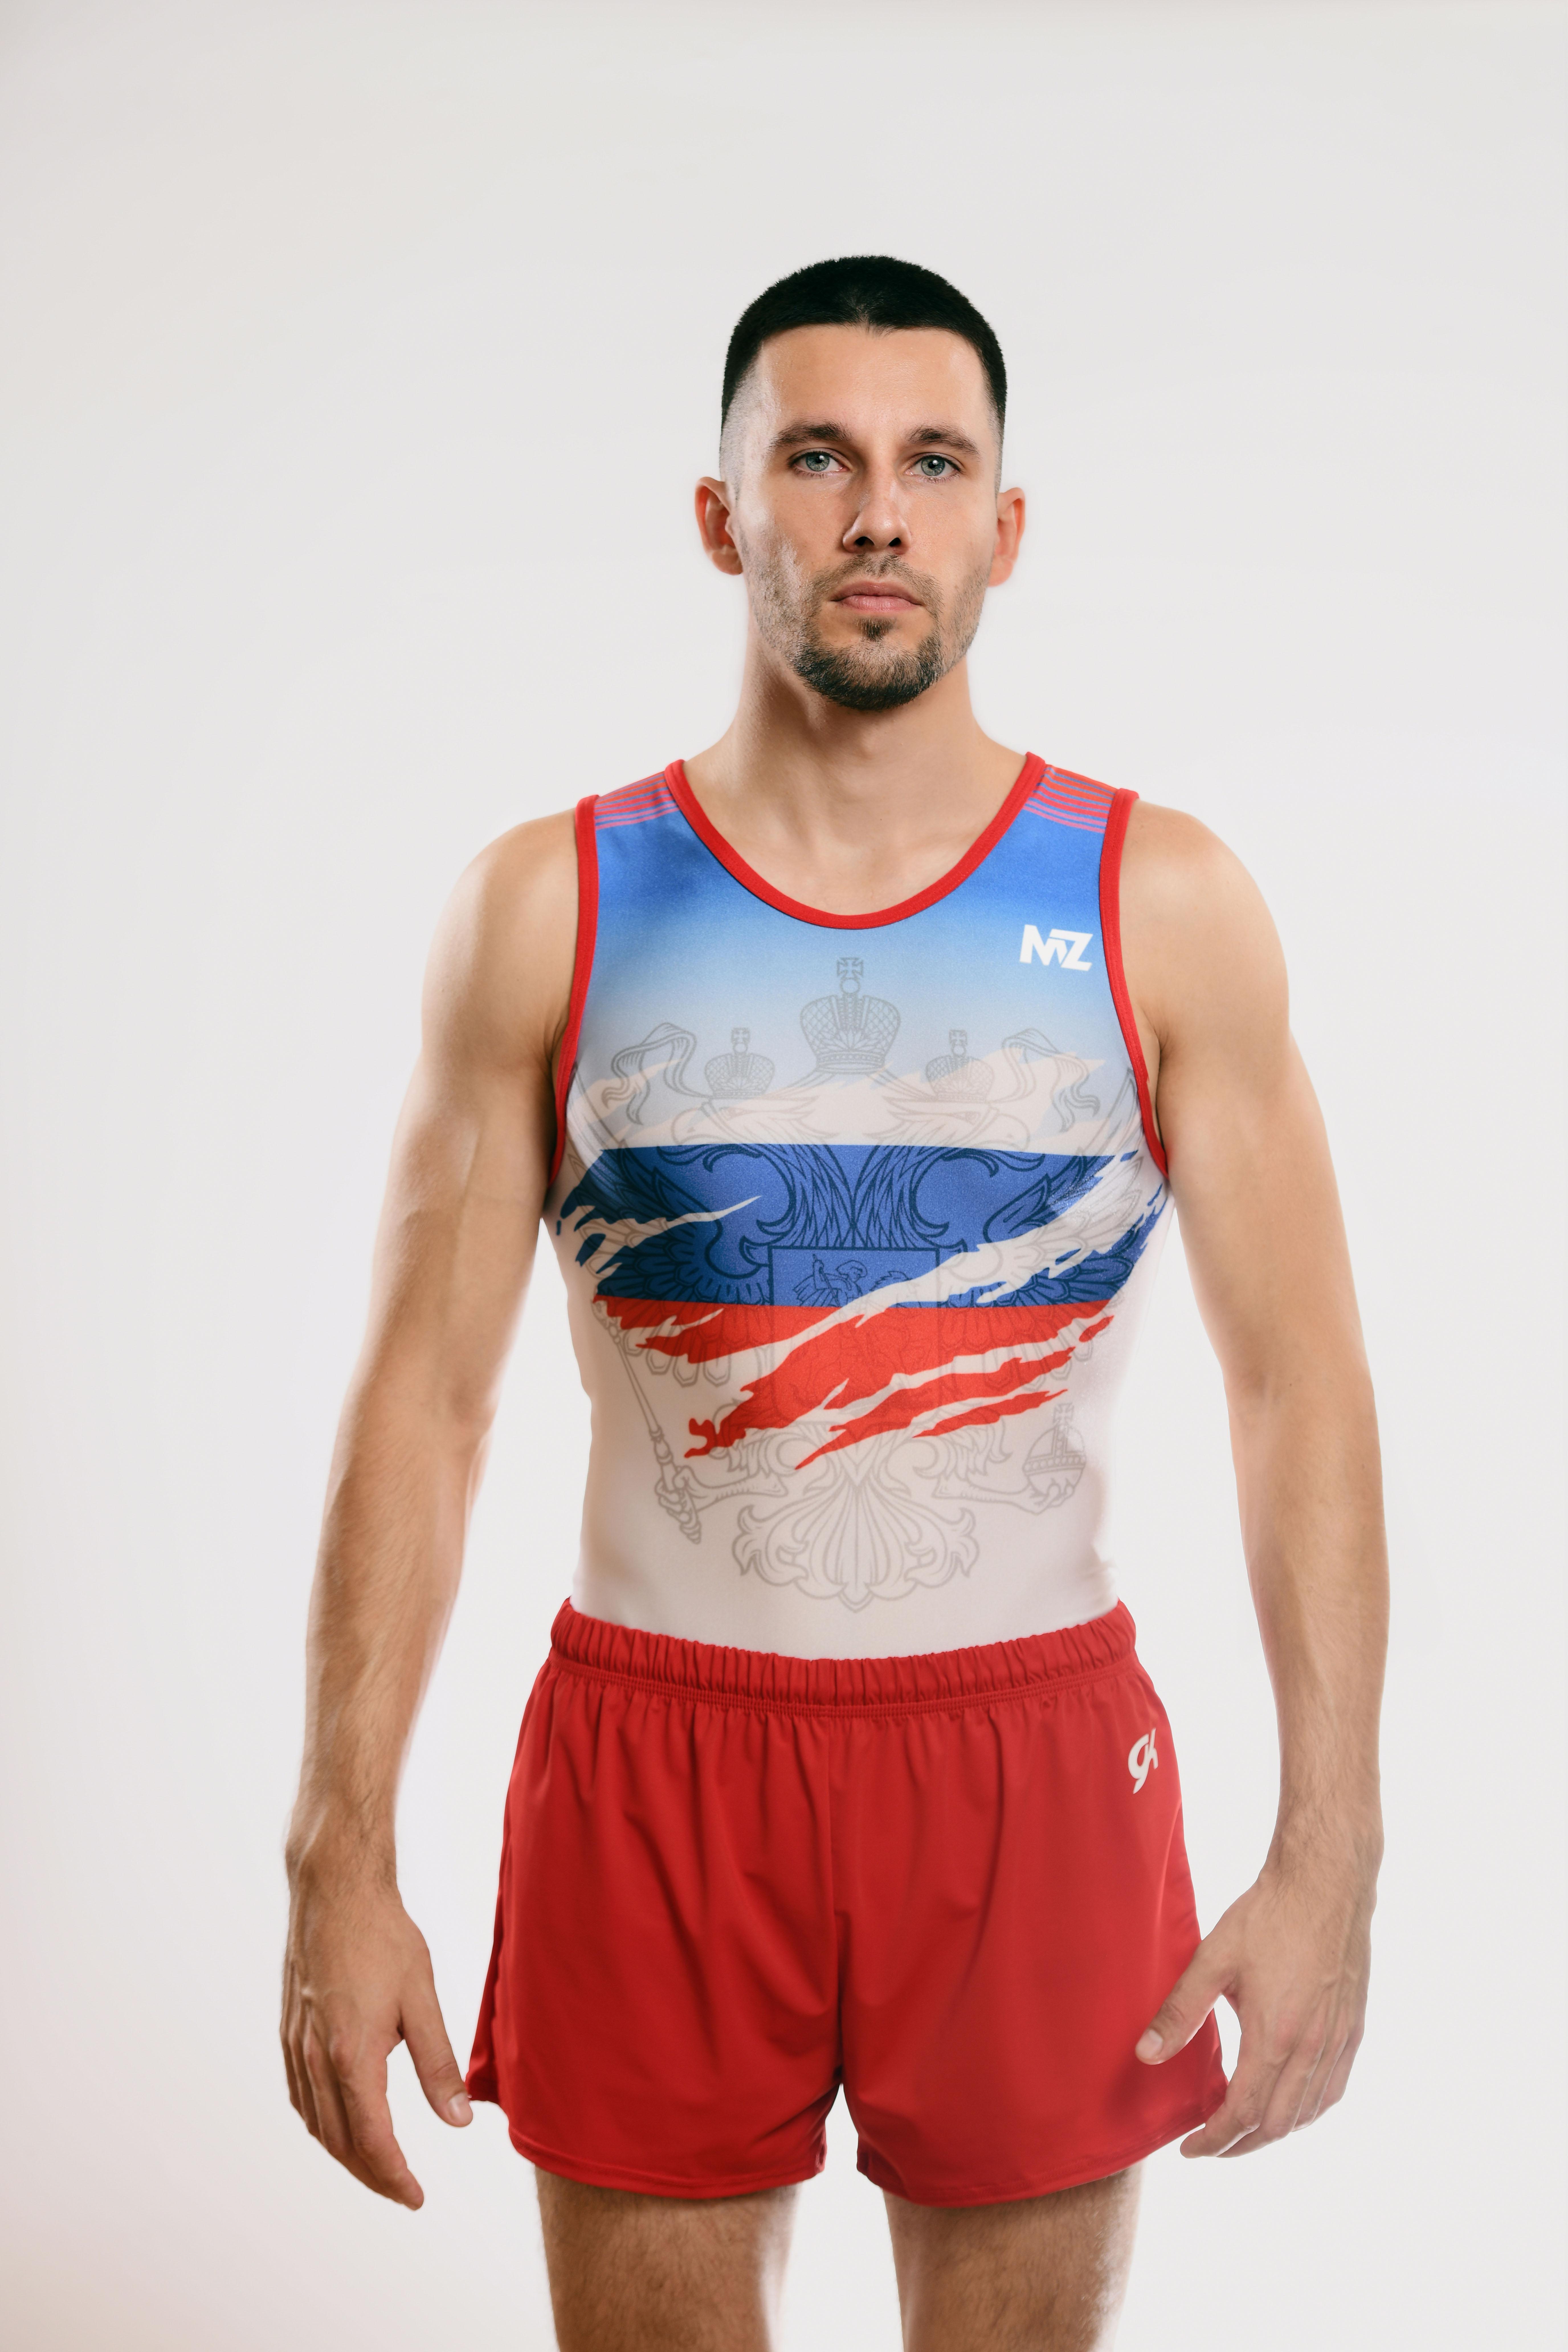 Купальник мужской для спортивной гимнастики GK Sport MZ 201-8 белый с красно-синим рисунком без рукава